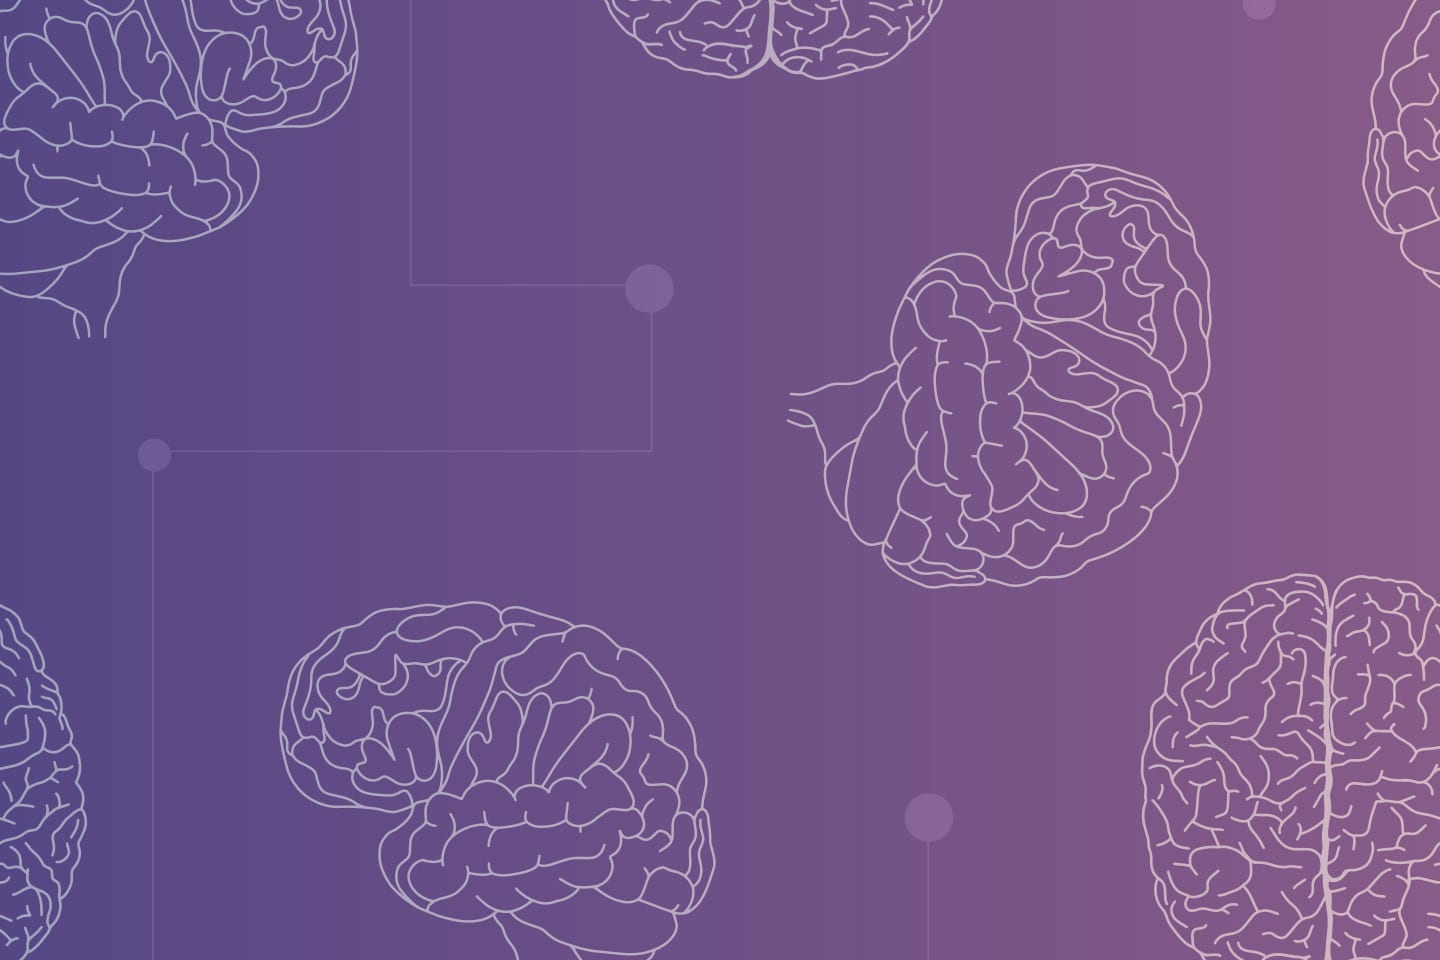 illustration of brains on a purple gradient